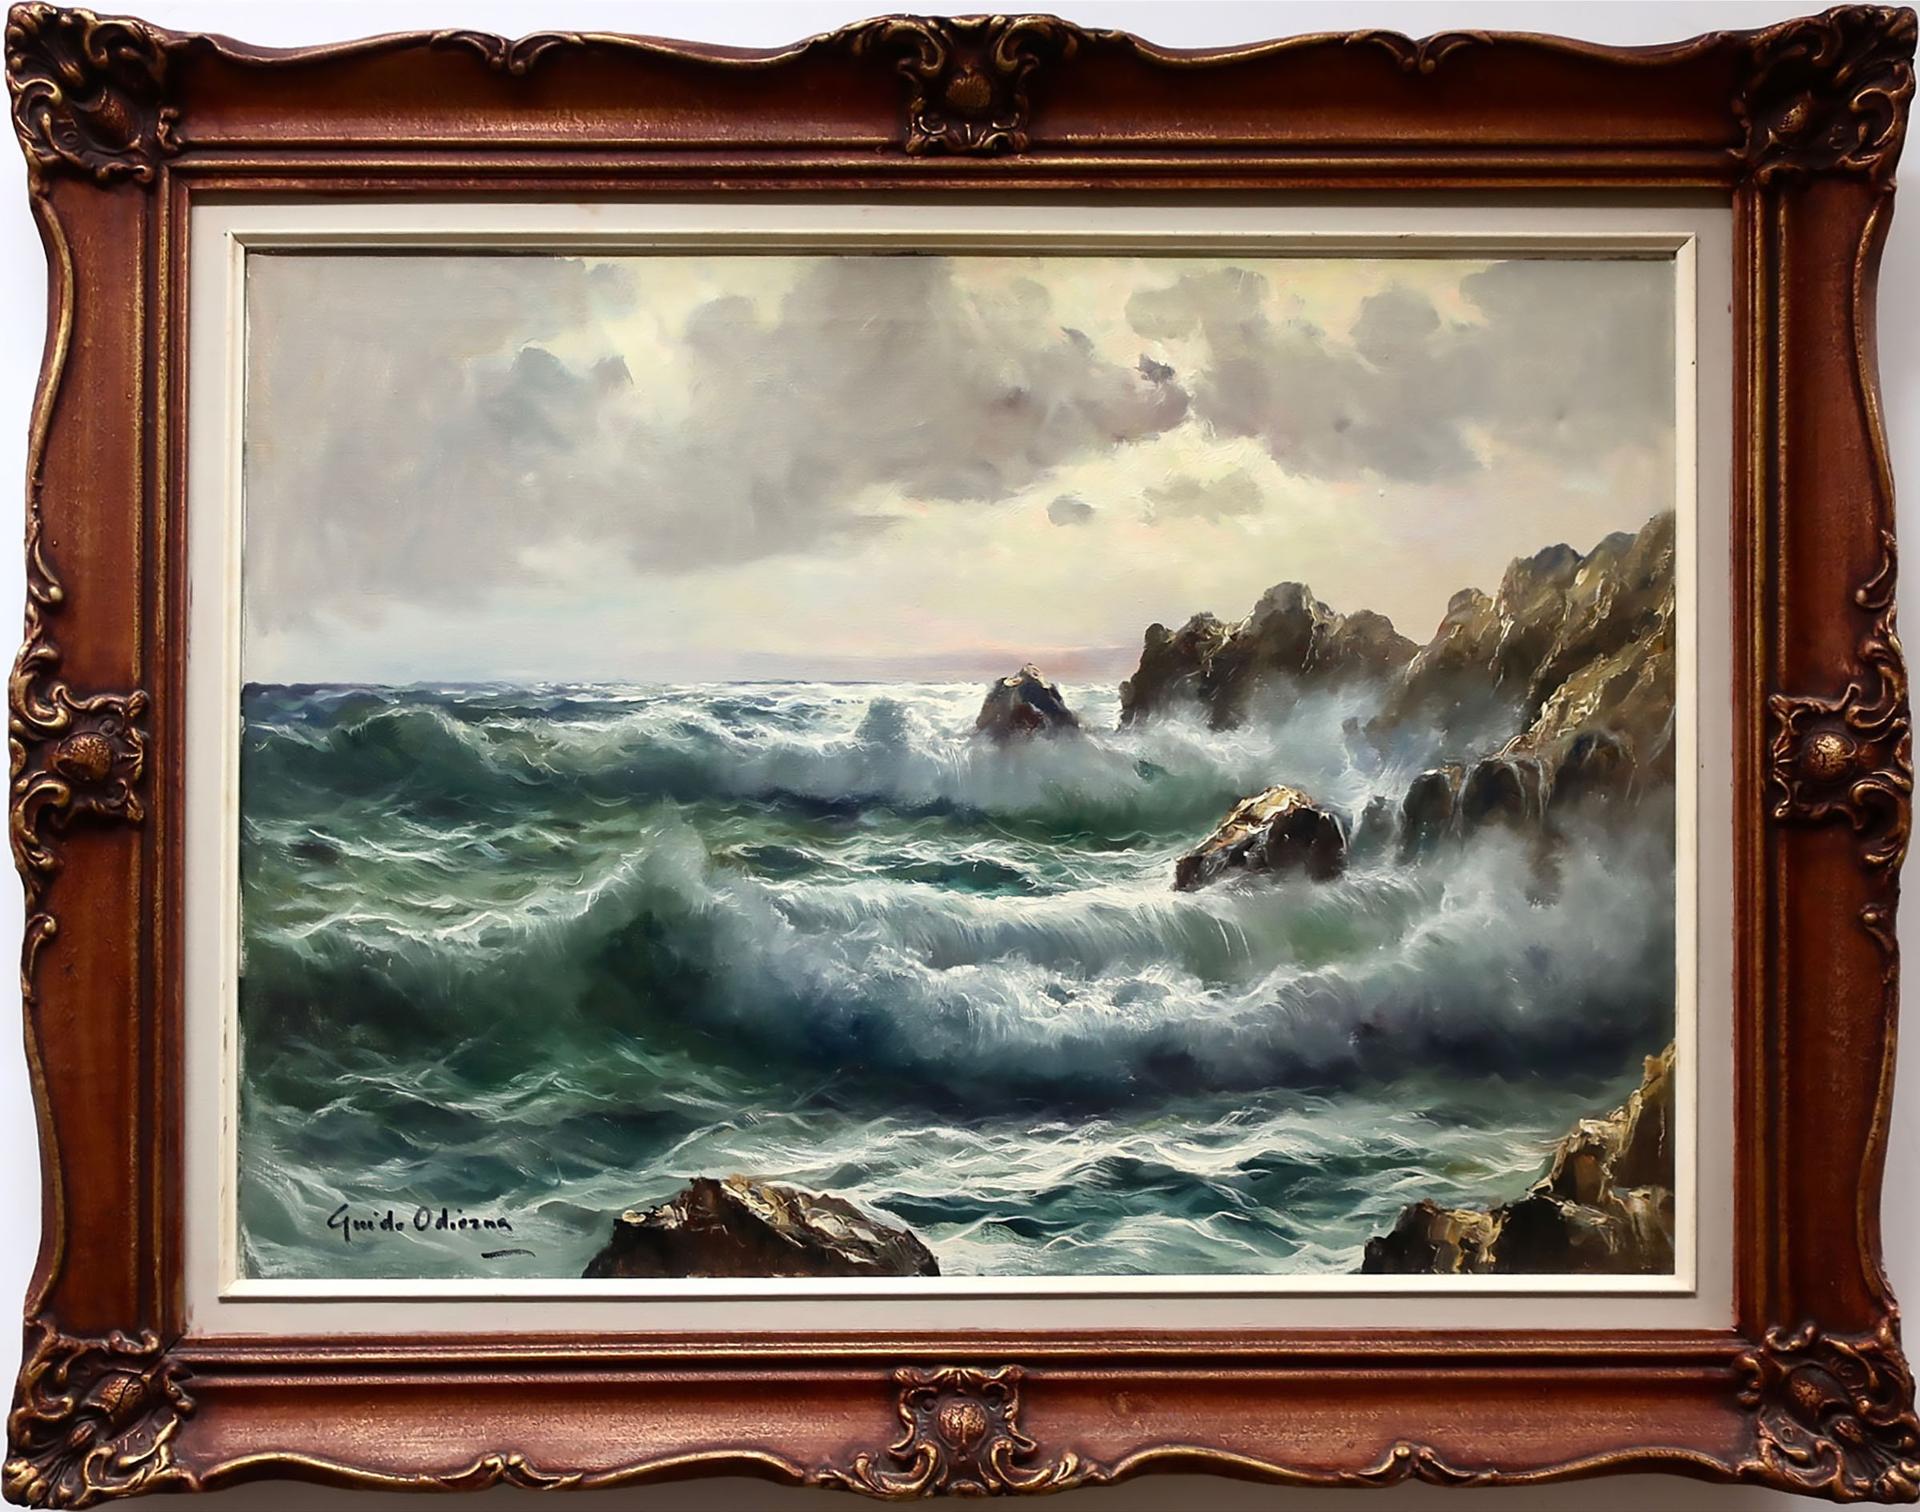 Guido Odierna (1913-1991) - Crashing Waves At Dusk